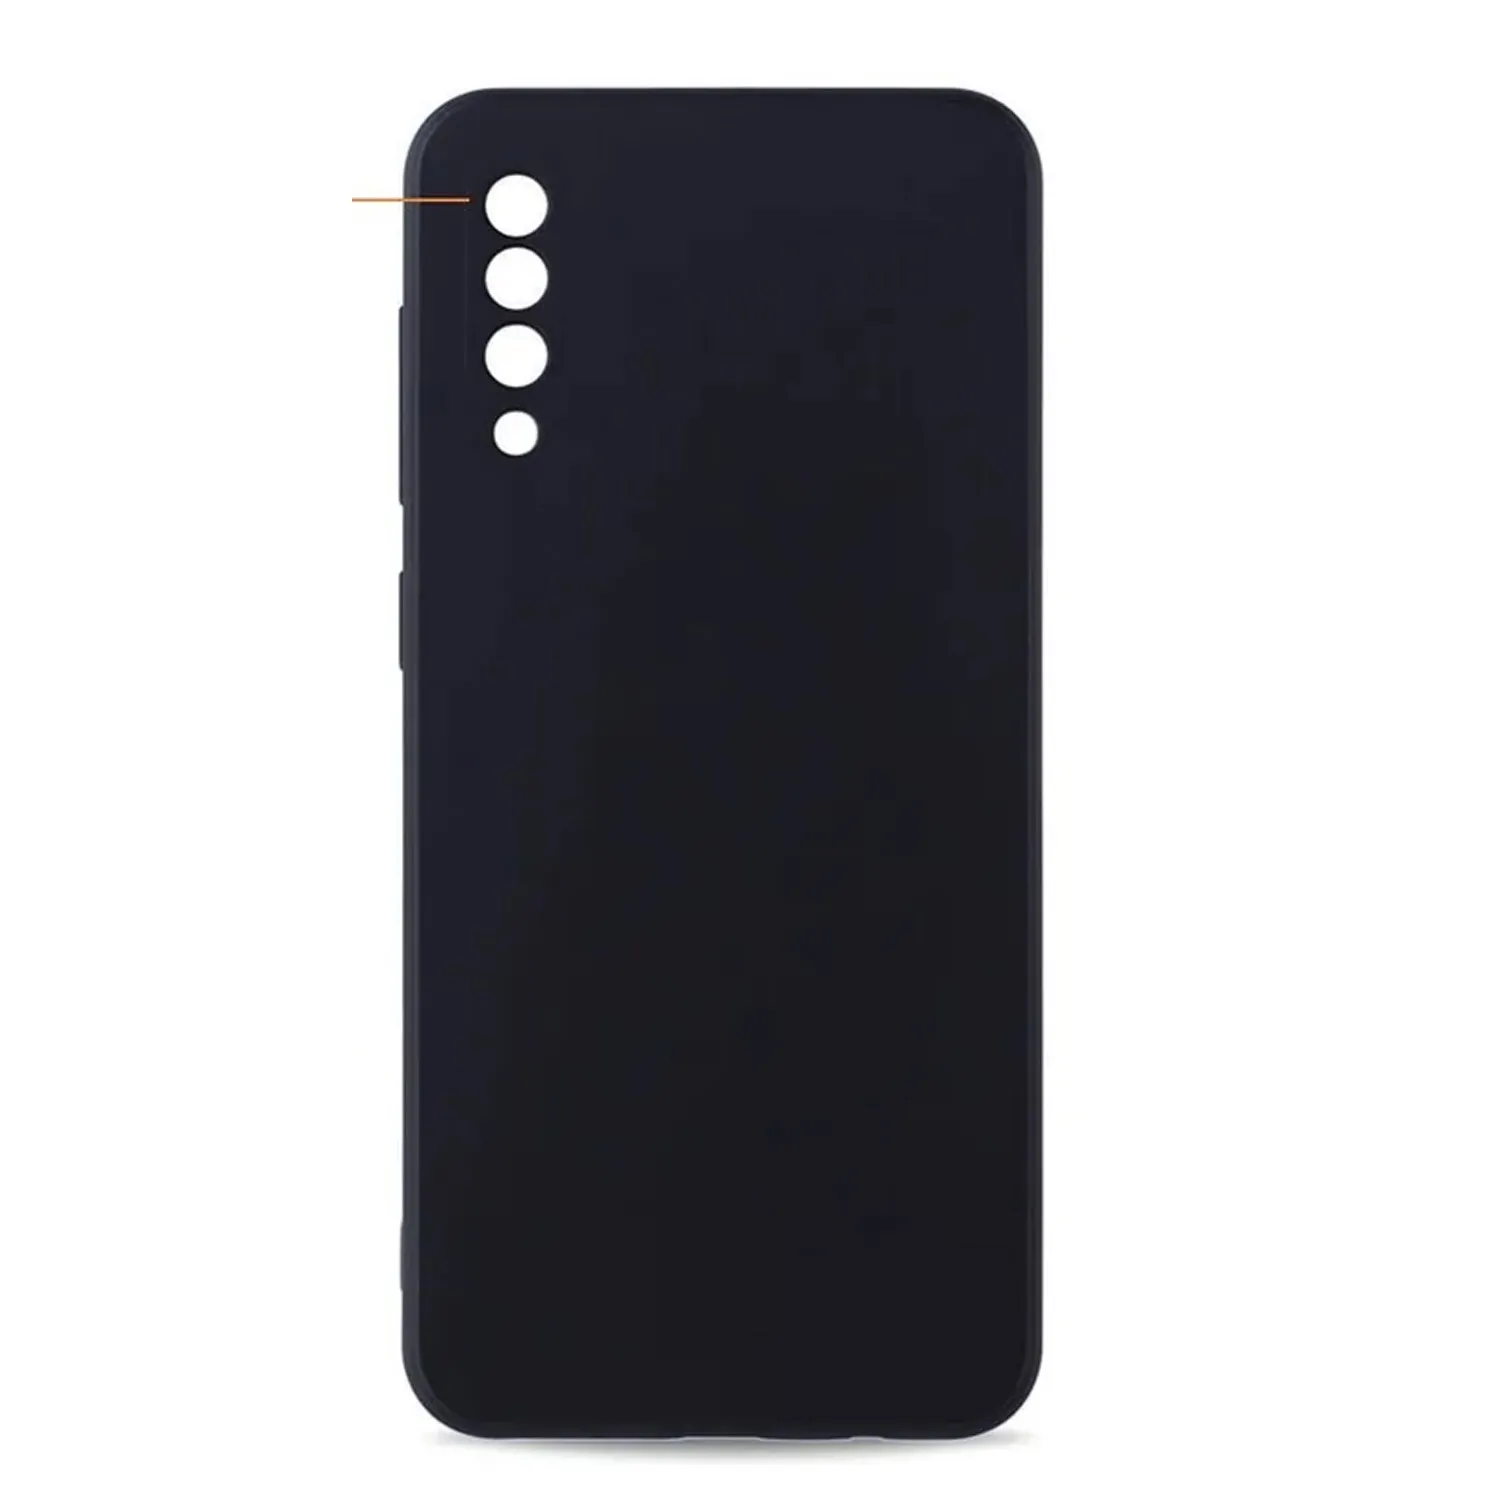 Cиликоновый чехол FASHION CASE Samsung Galaxy A50, Galaxy A30S, Galaxy A50S (черный)